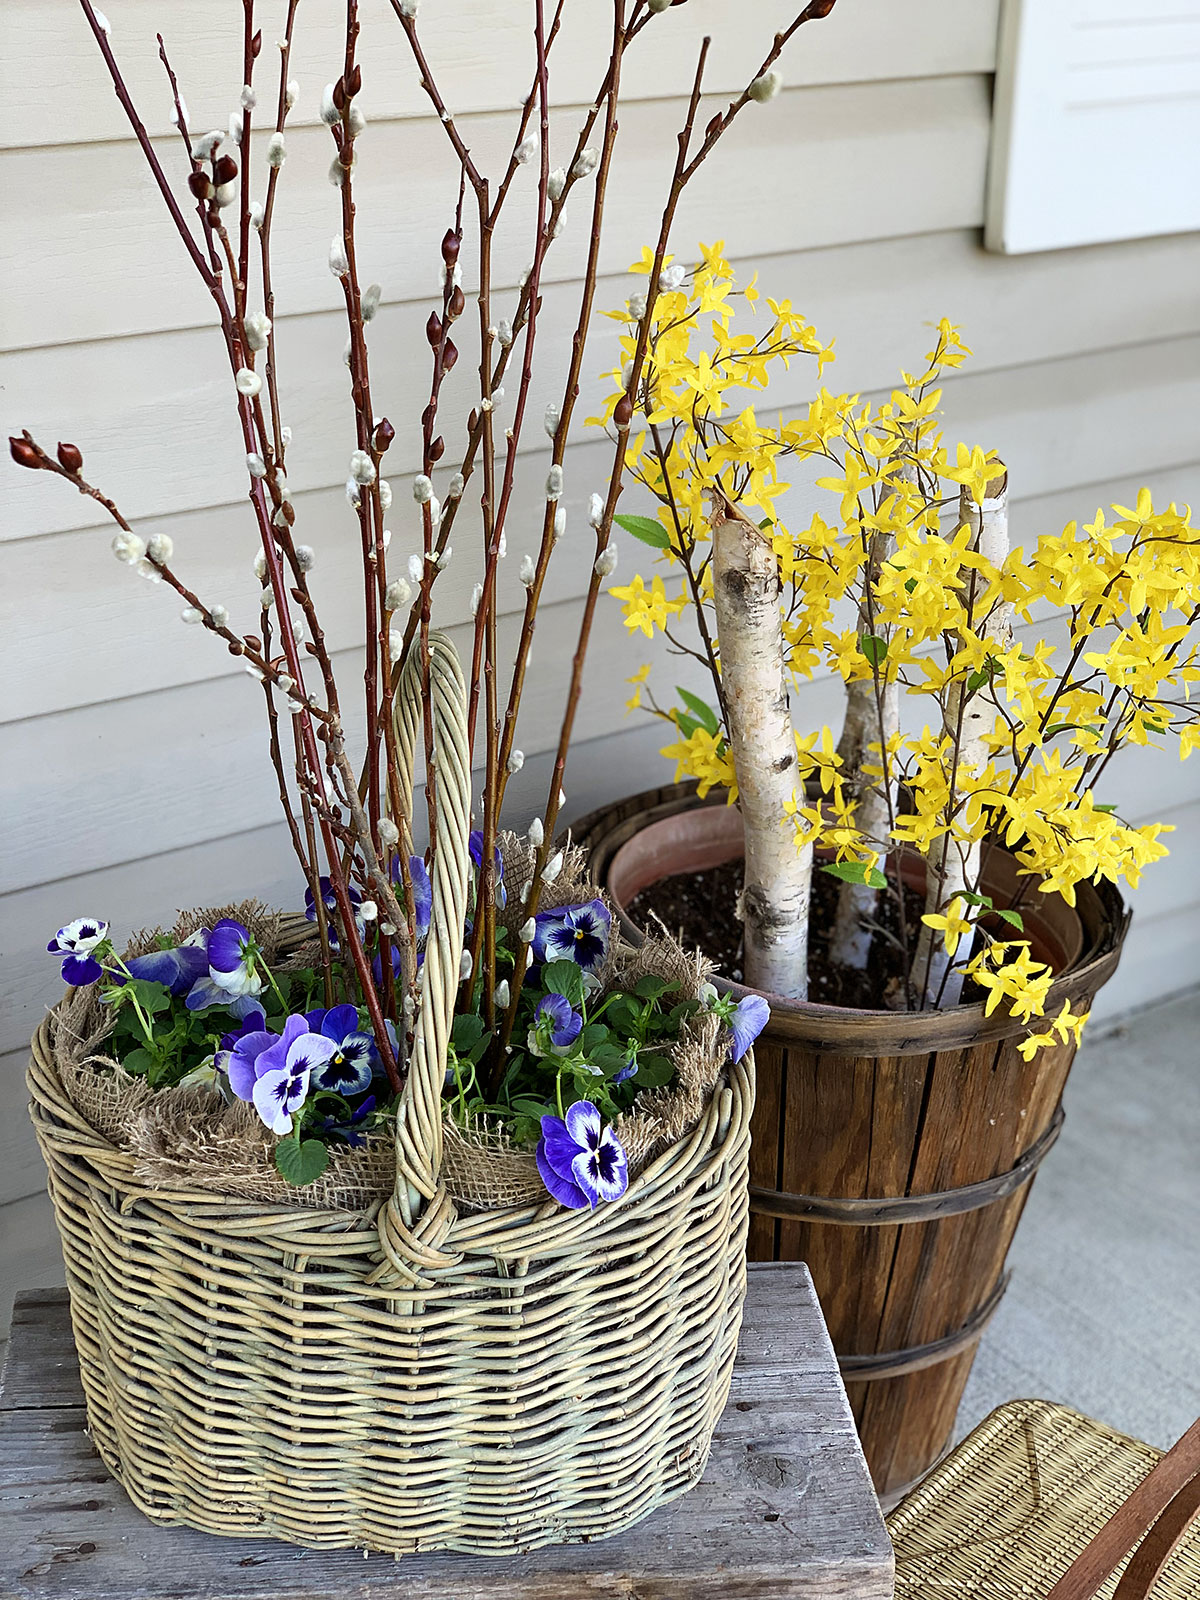 Purple pansies planted in a basket.